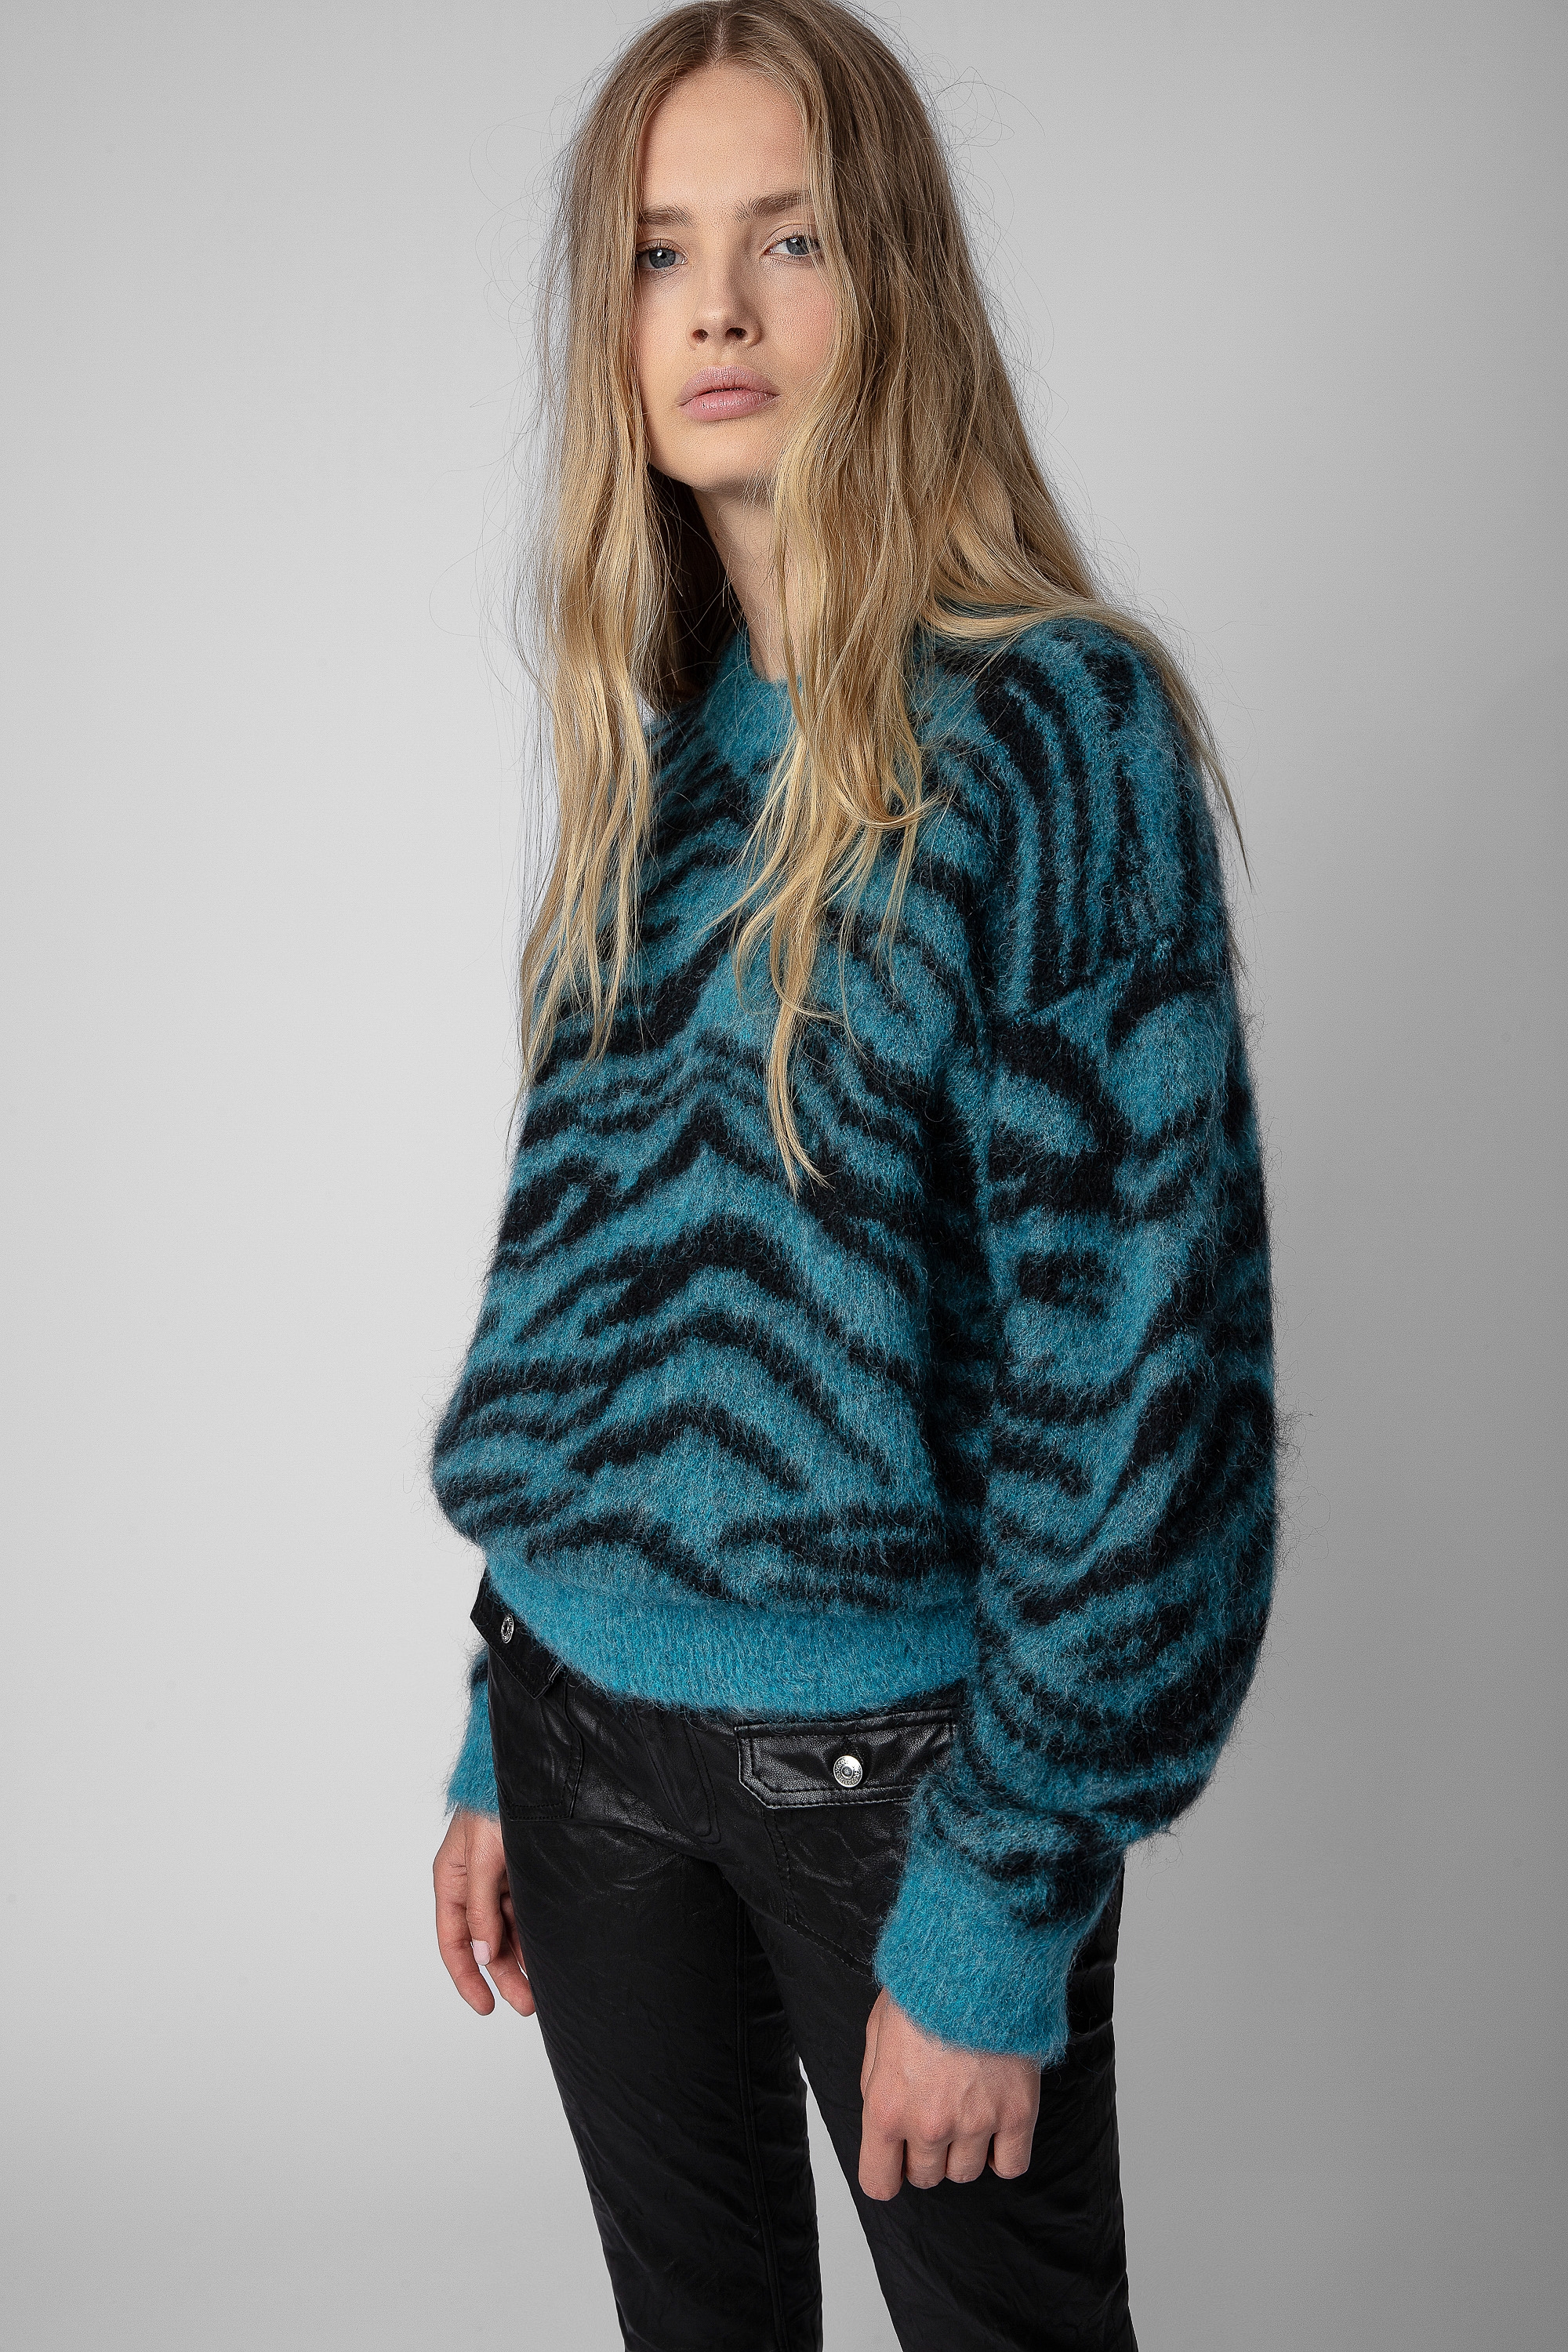 Rita Tiger Sweater